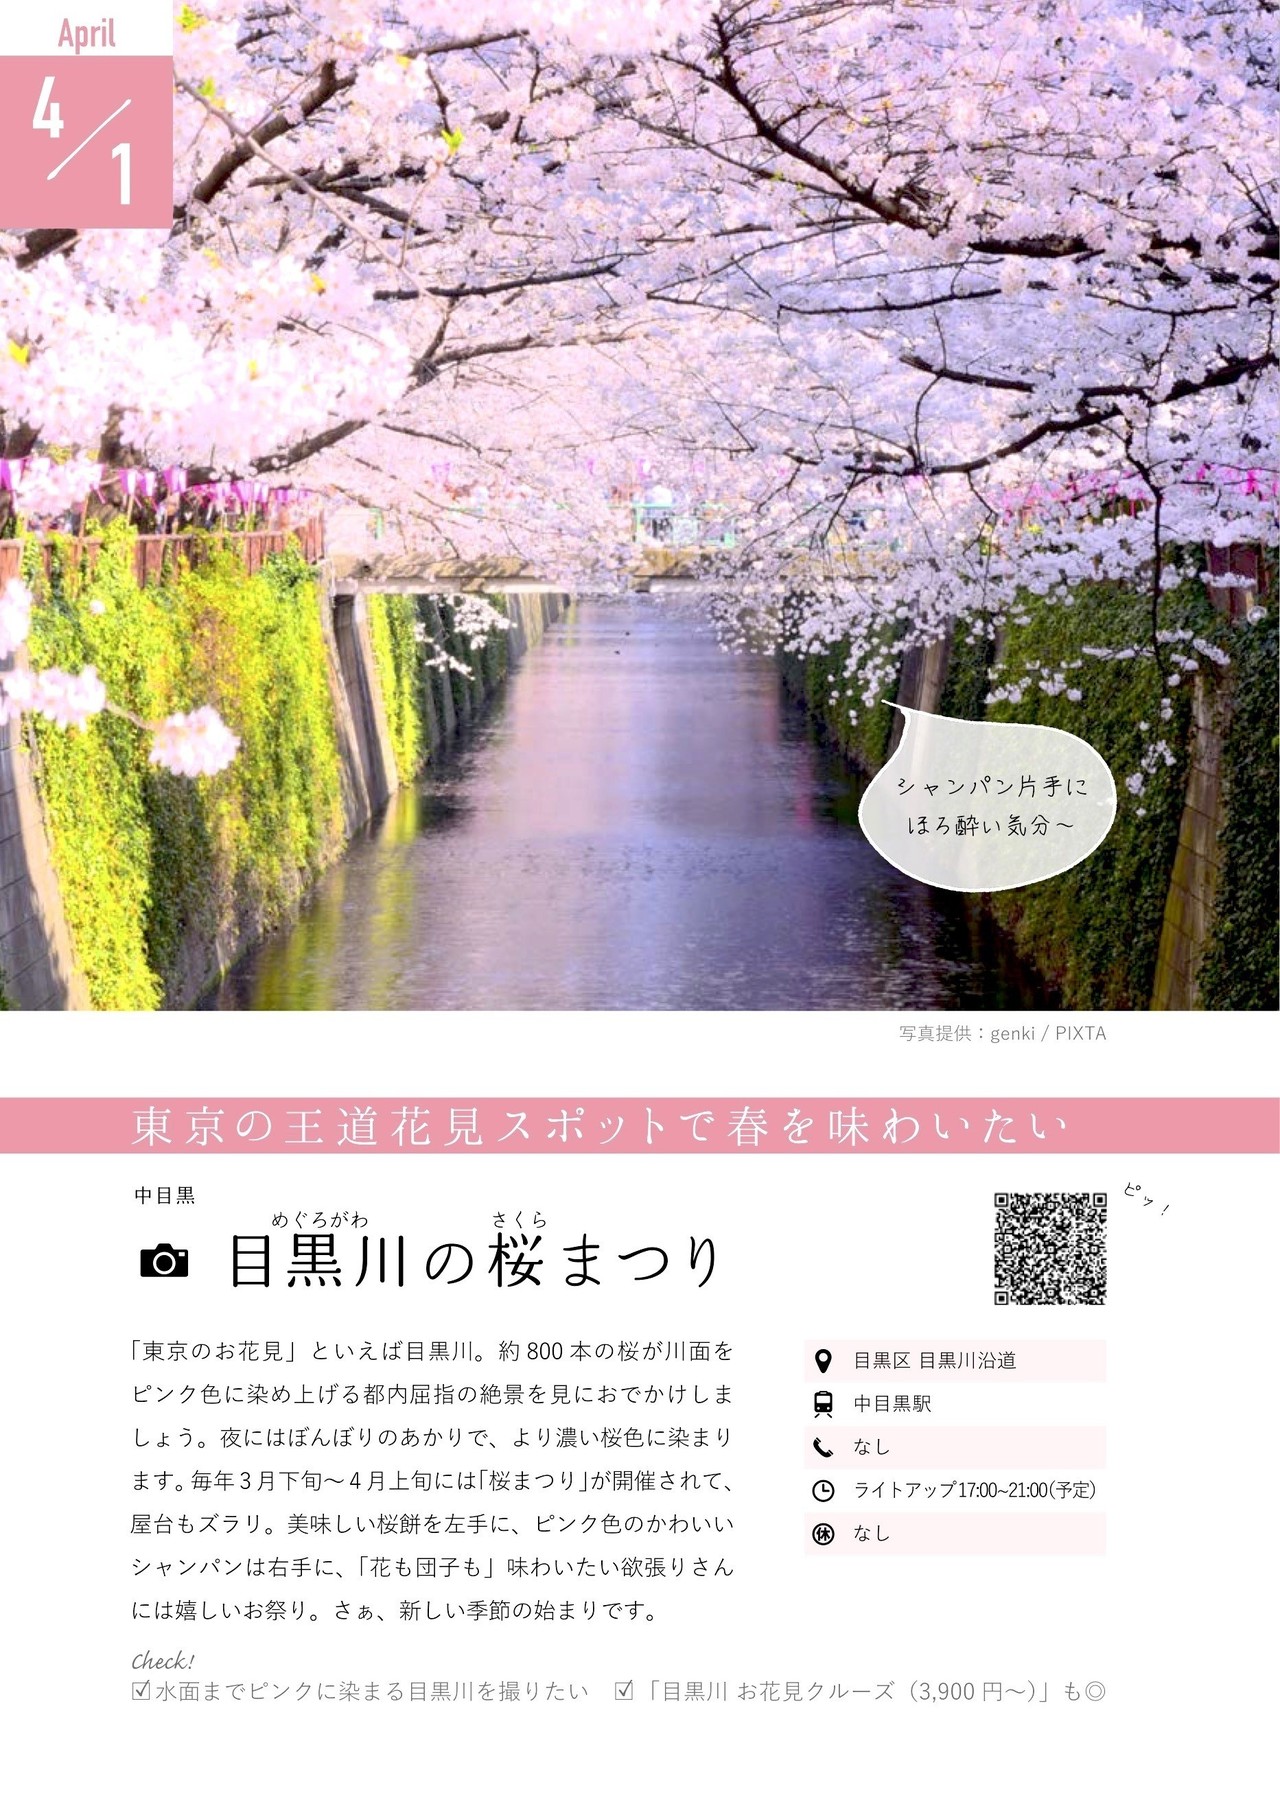 4月のto Do リストはこれ 春本番の4月にしたい10のこと 365daysまいにち東京 の場合 ライツ社